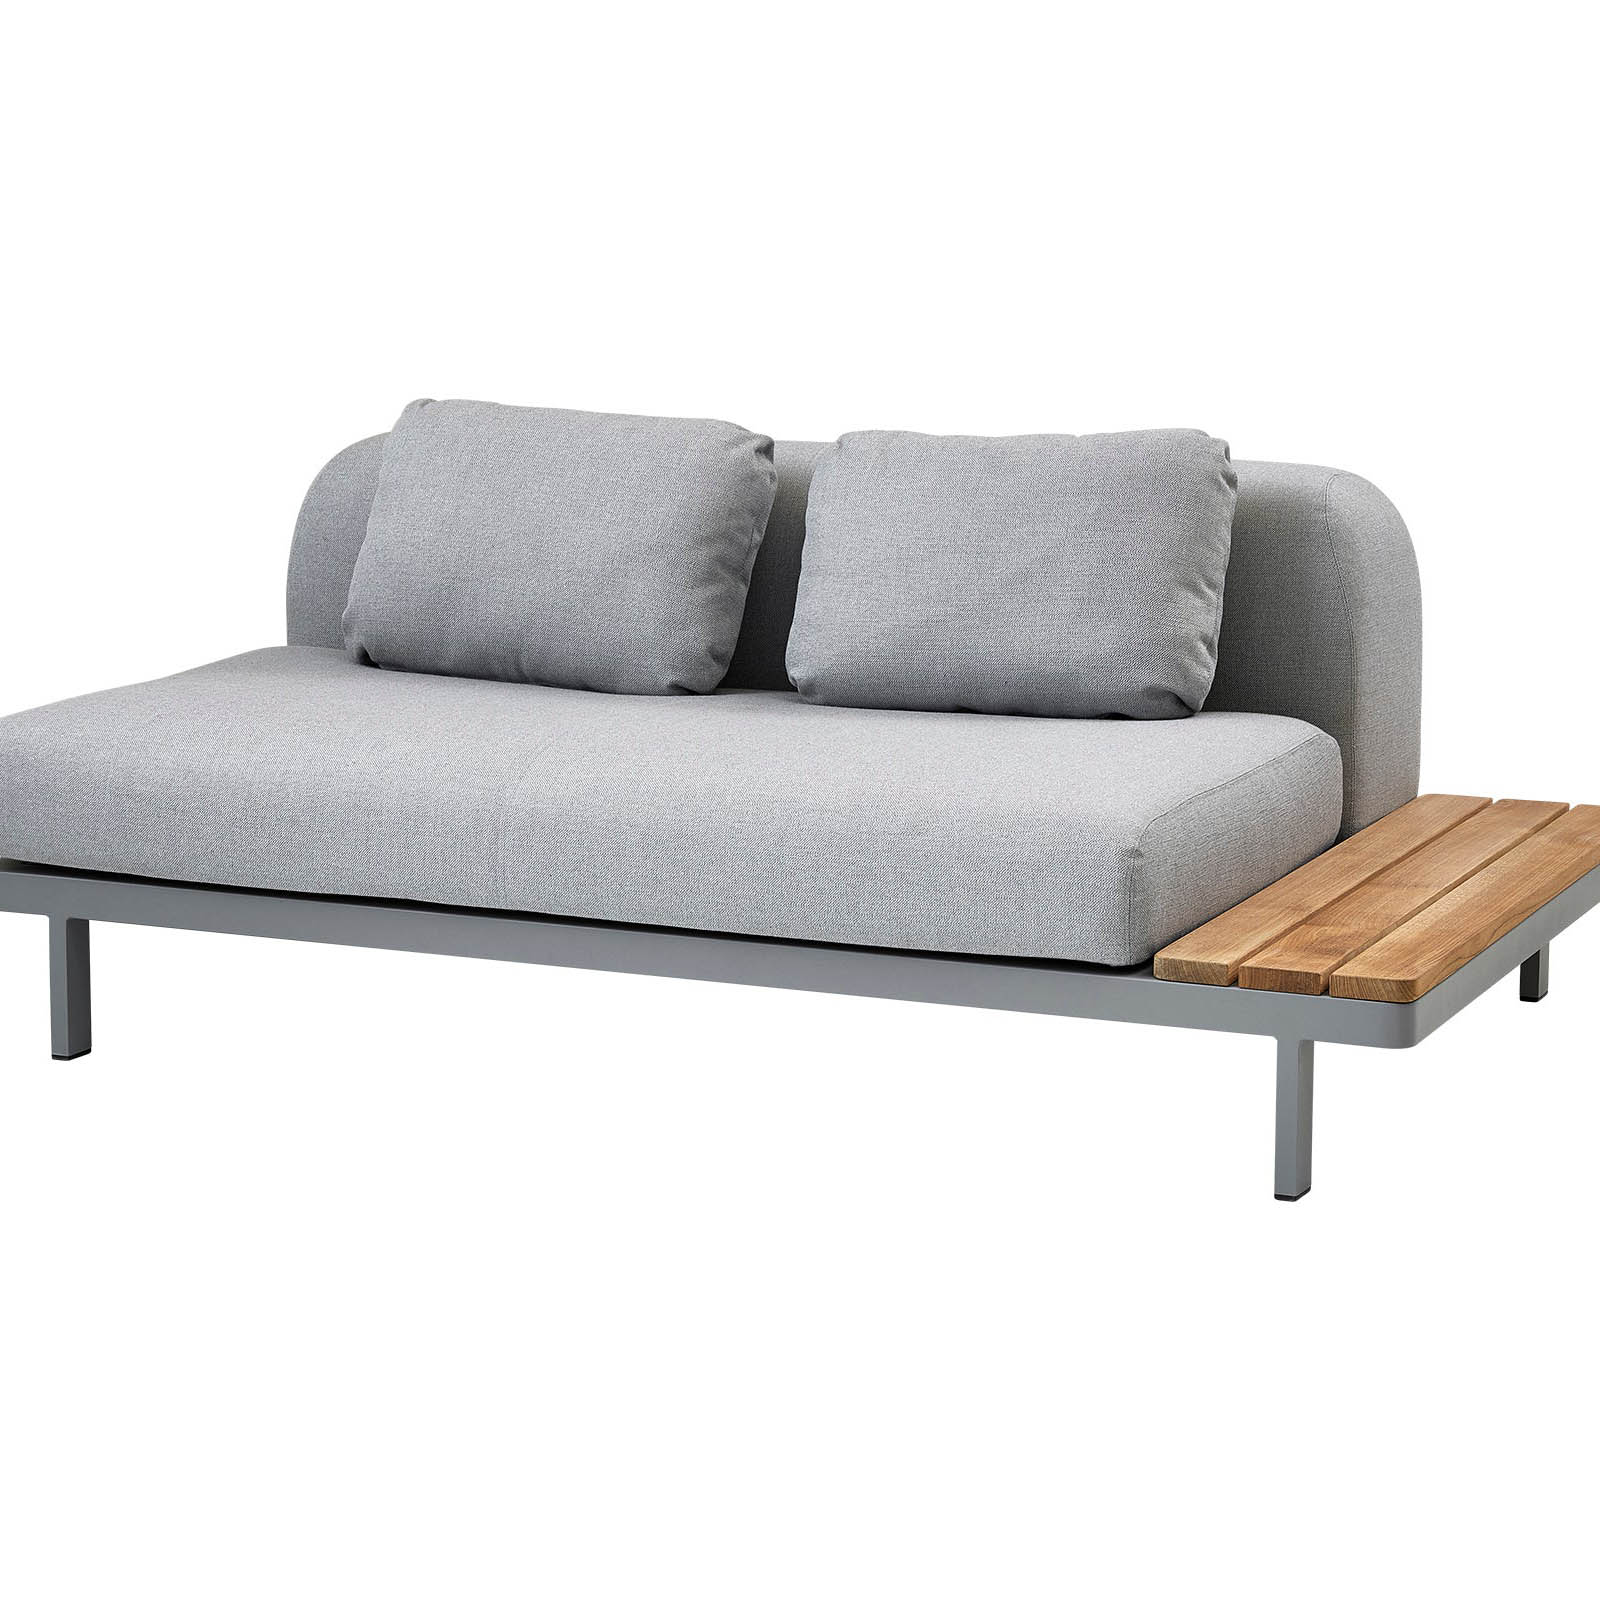 Space Rückenkissen 2-Sitzer Sofa aus Cane-line AirTouch in Light Grey